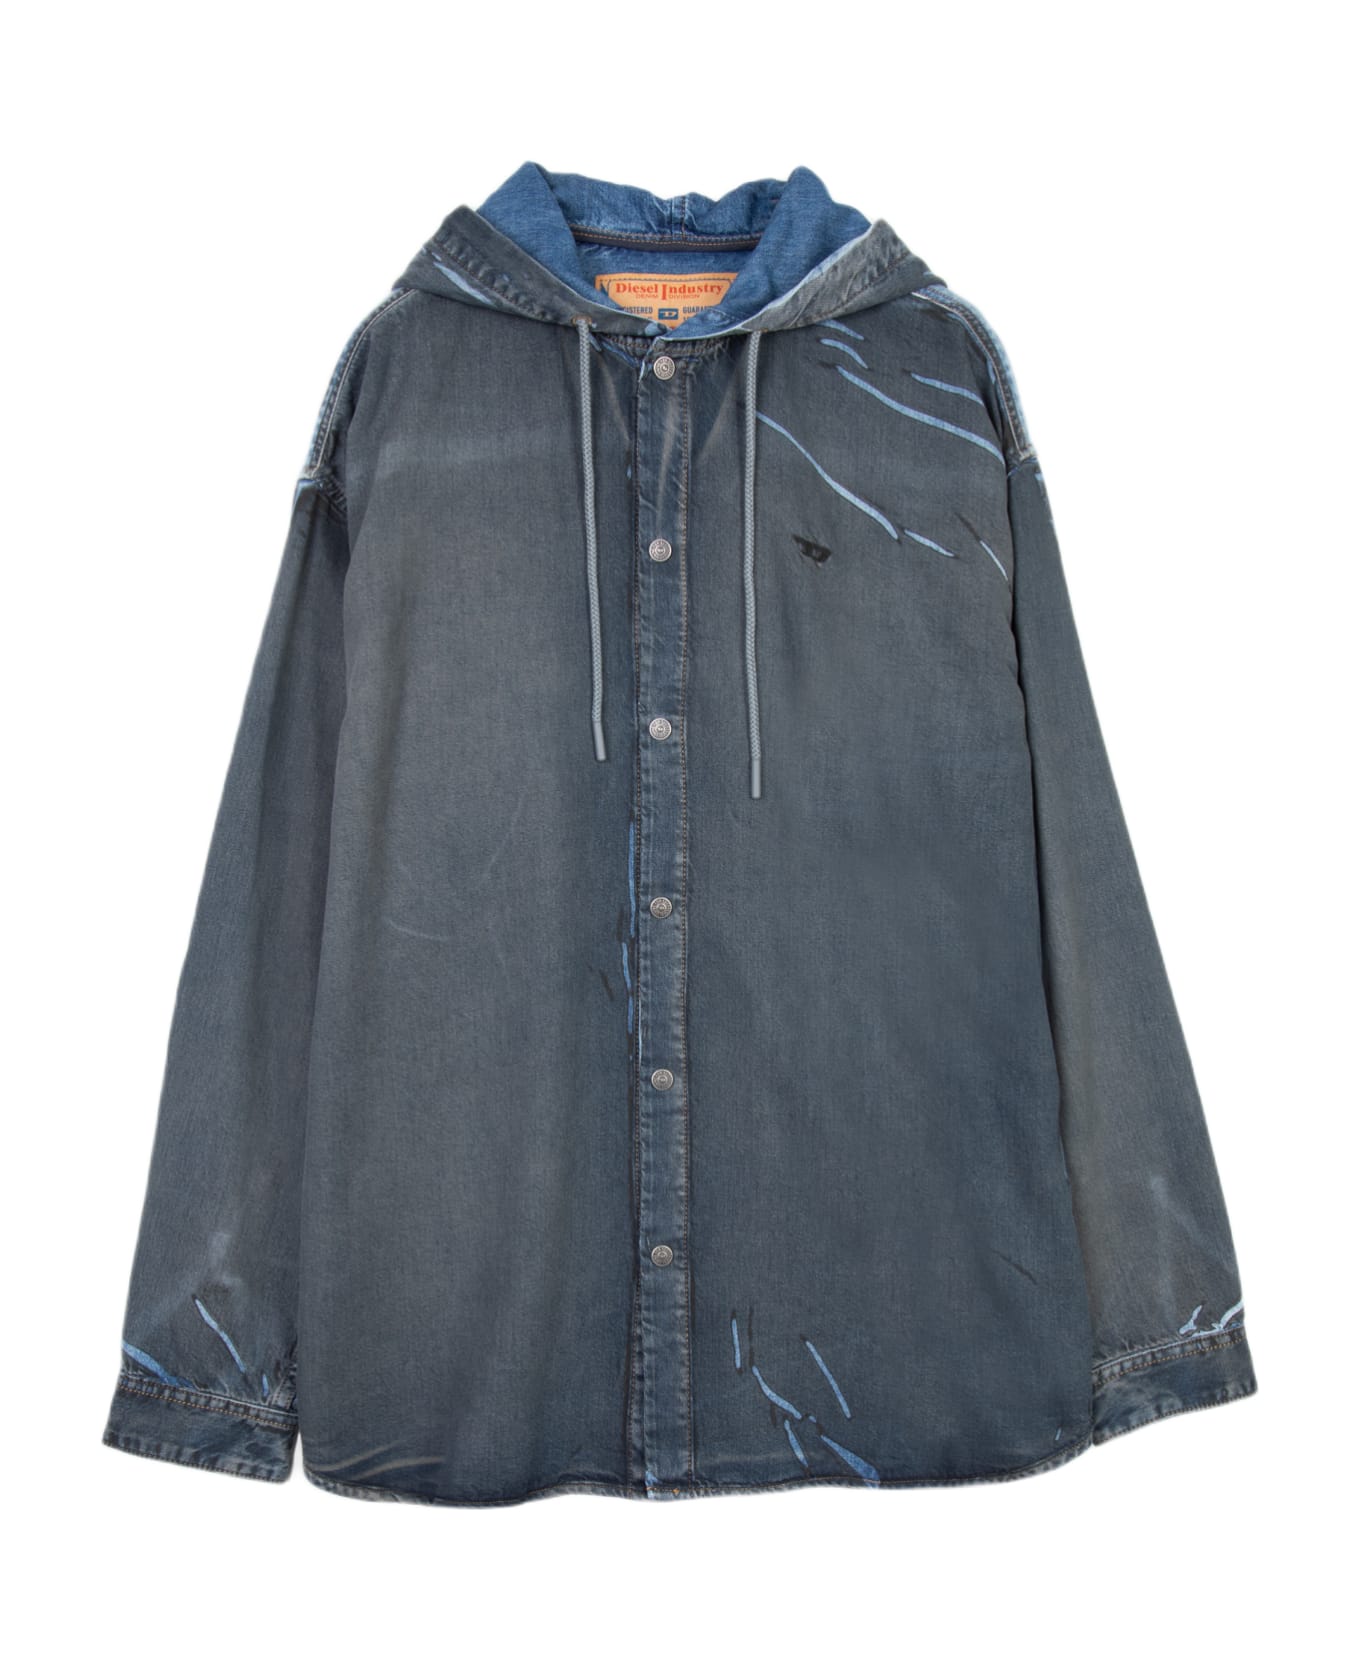 Diesel D-dewny-hood-s1 Blue Denim Hooded Shirt With Black Coating Detail - D Dewny Hood S1